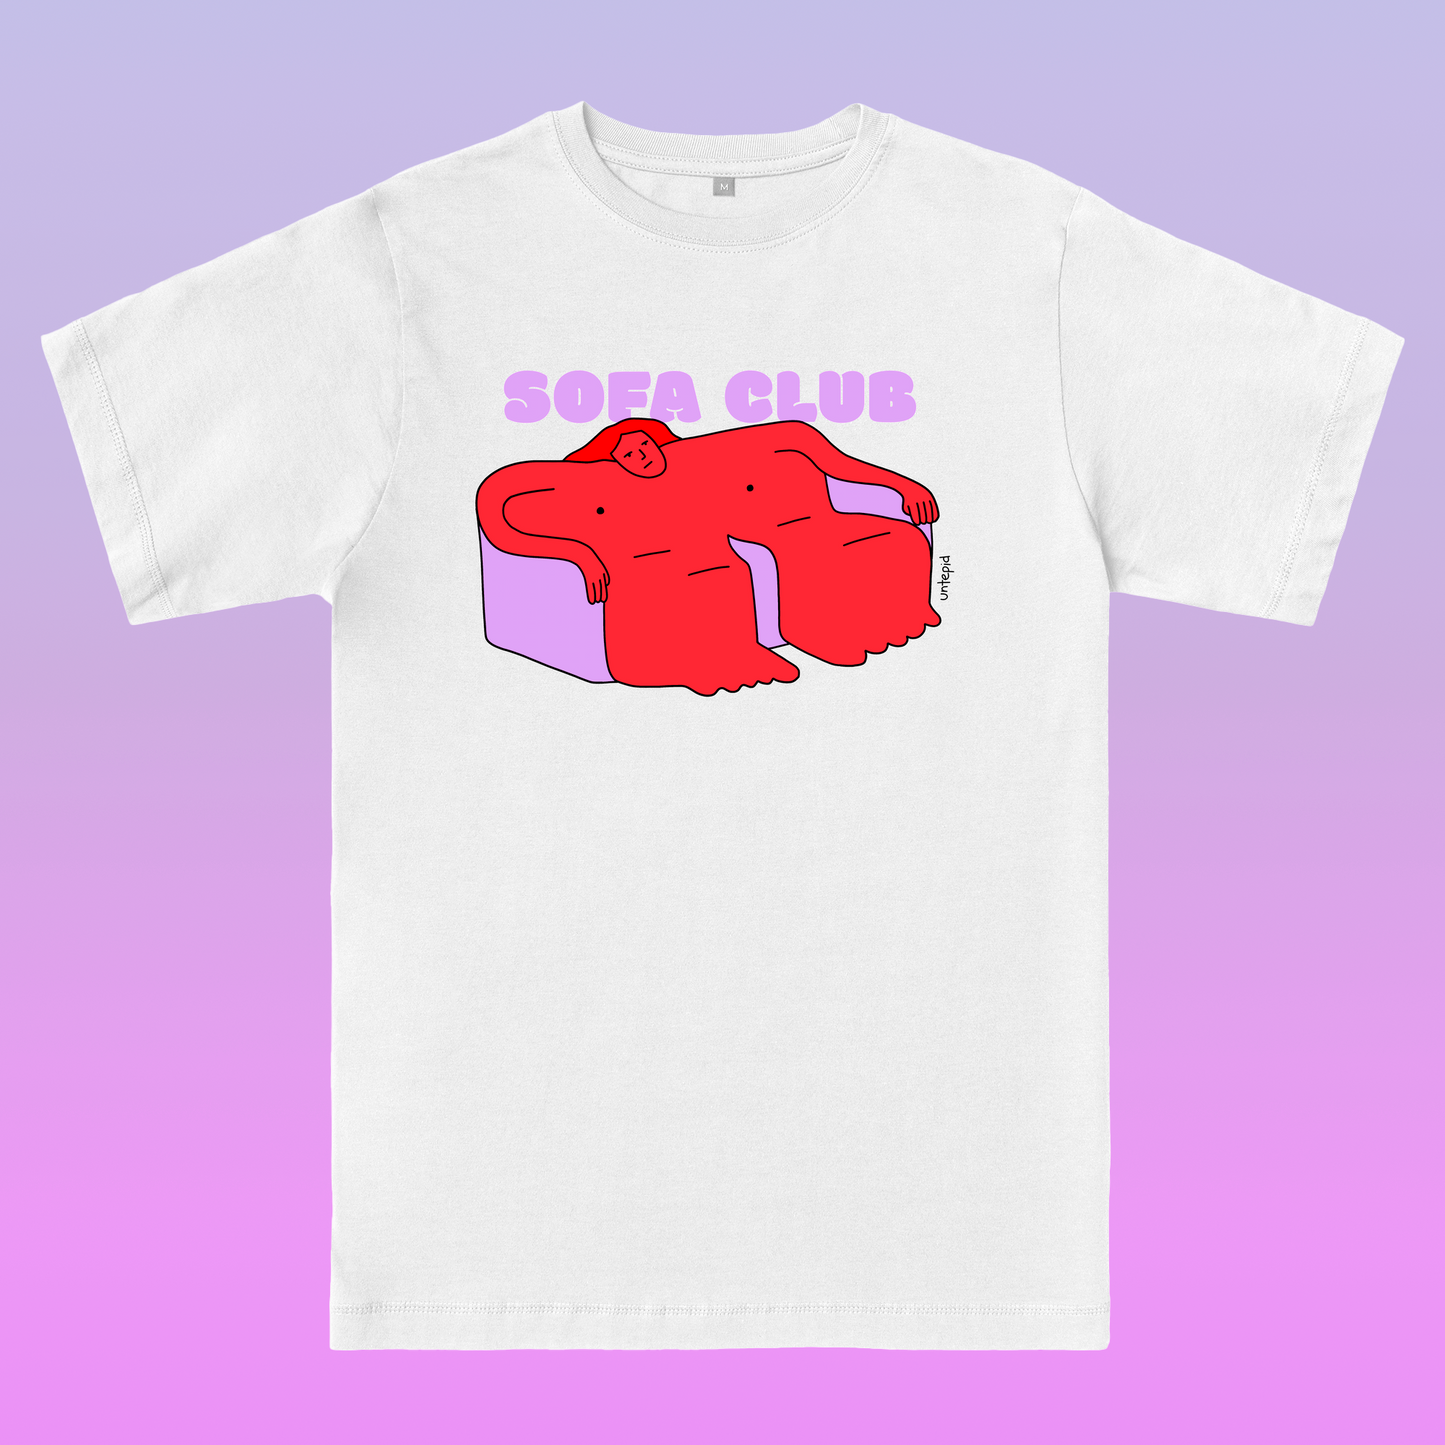 Sofa Club T-shirt